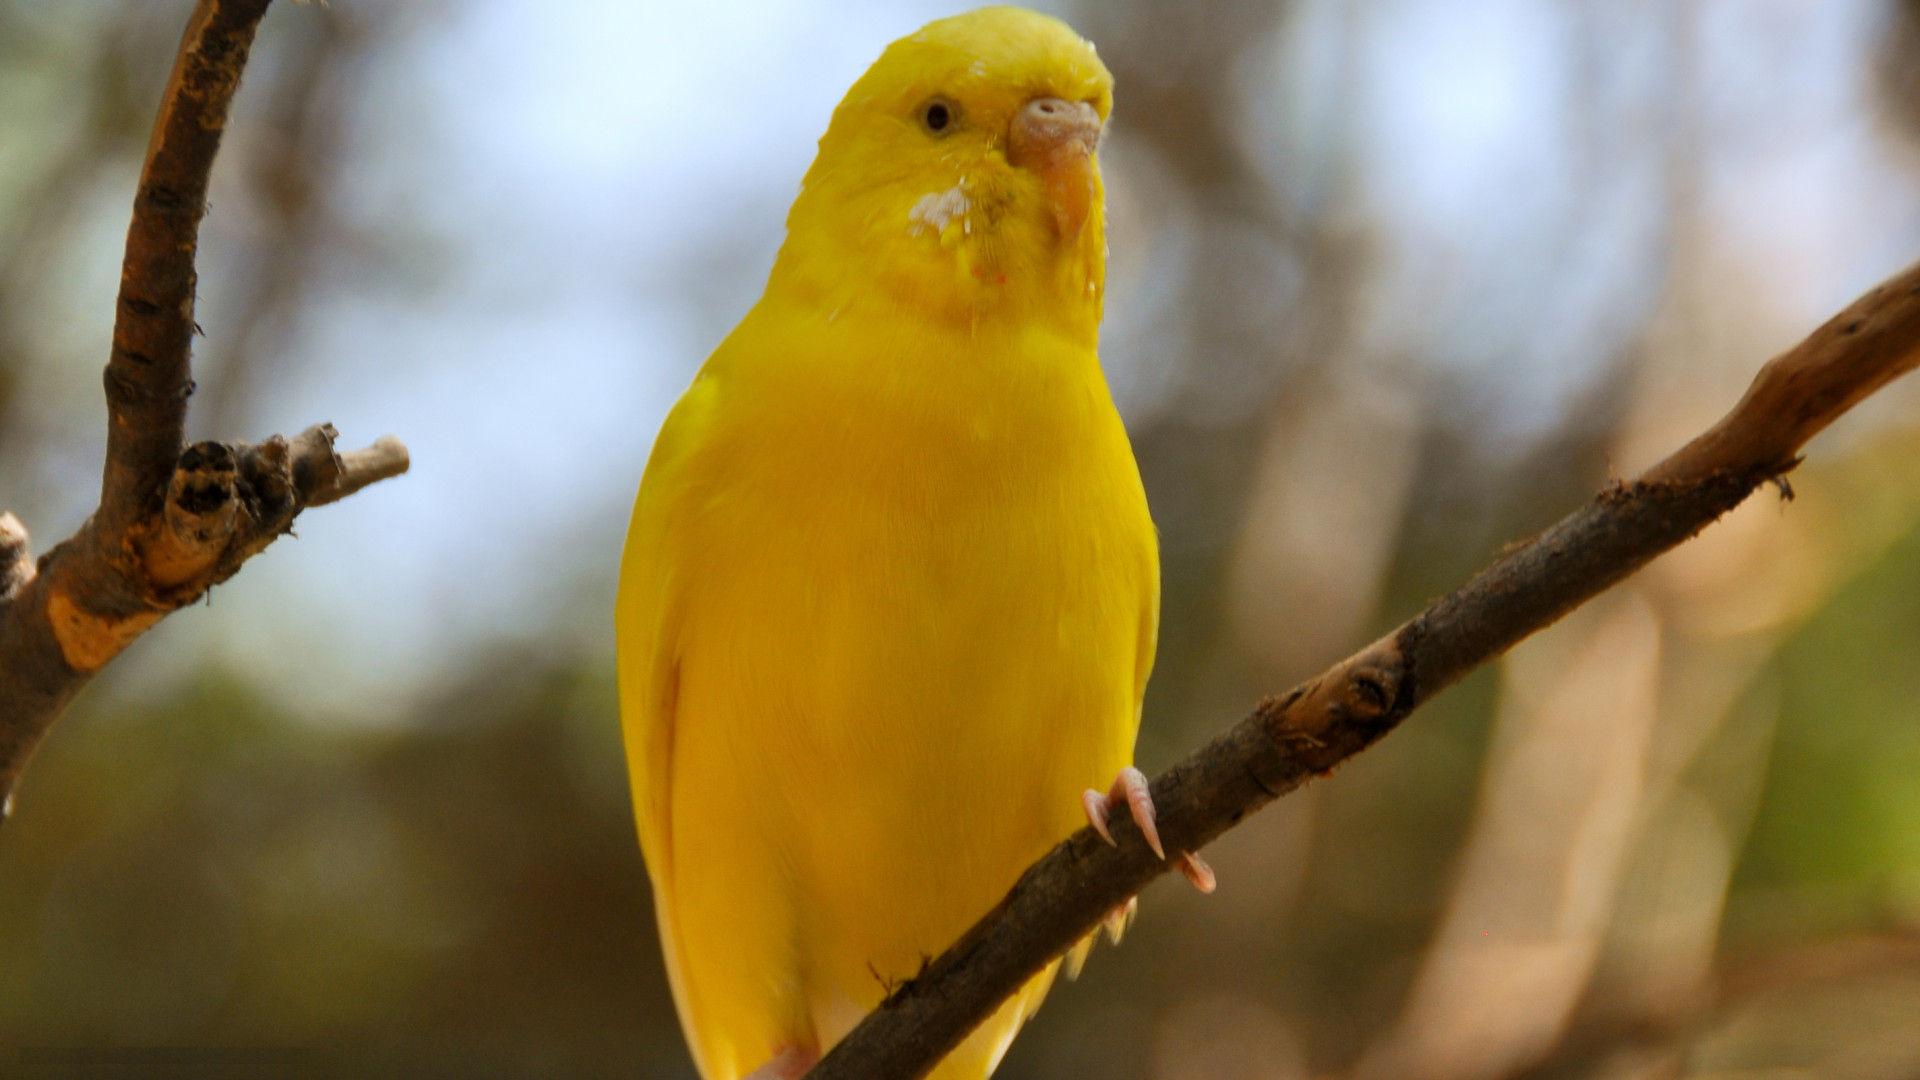 beautiful parakeet yellow bird images best desktop background hd ...